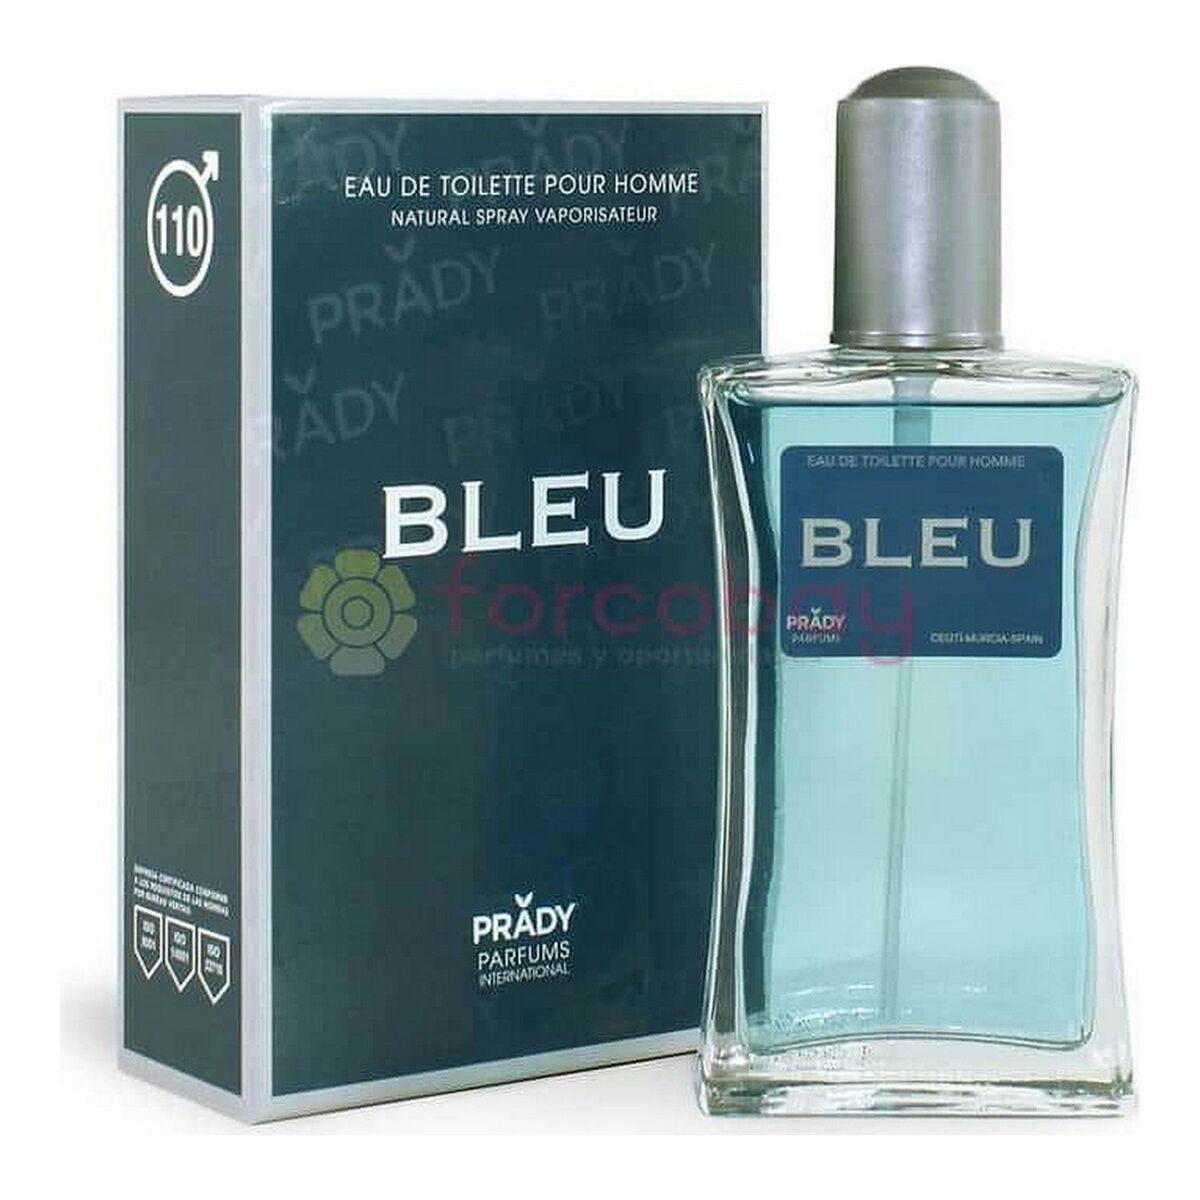 Profumo Uomo Bleu 110 Prady Parfums EDT (100 ml)